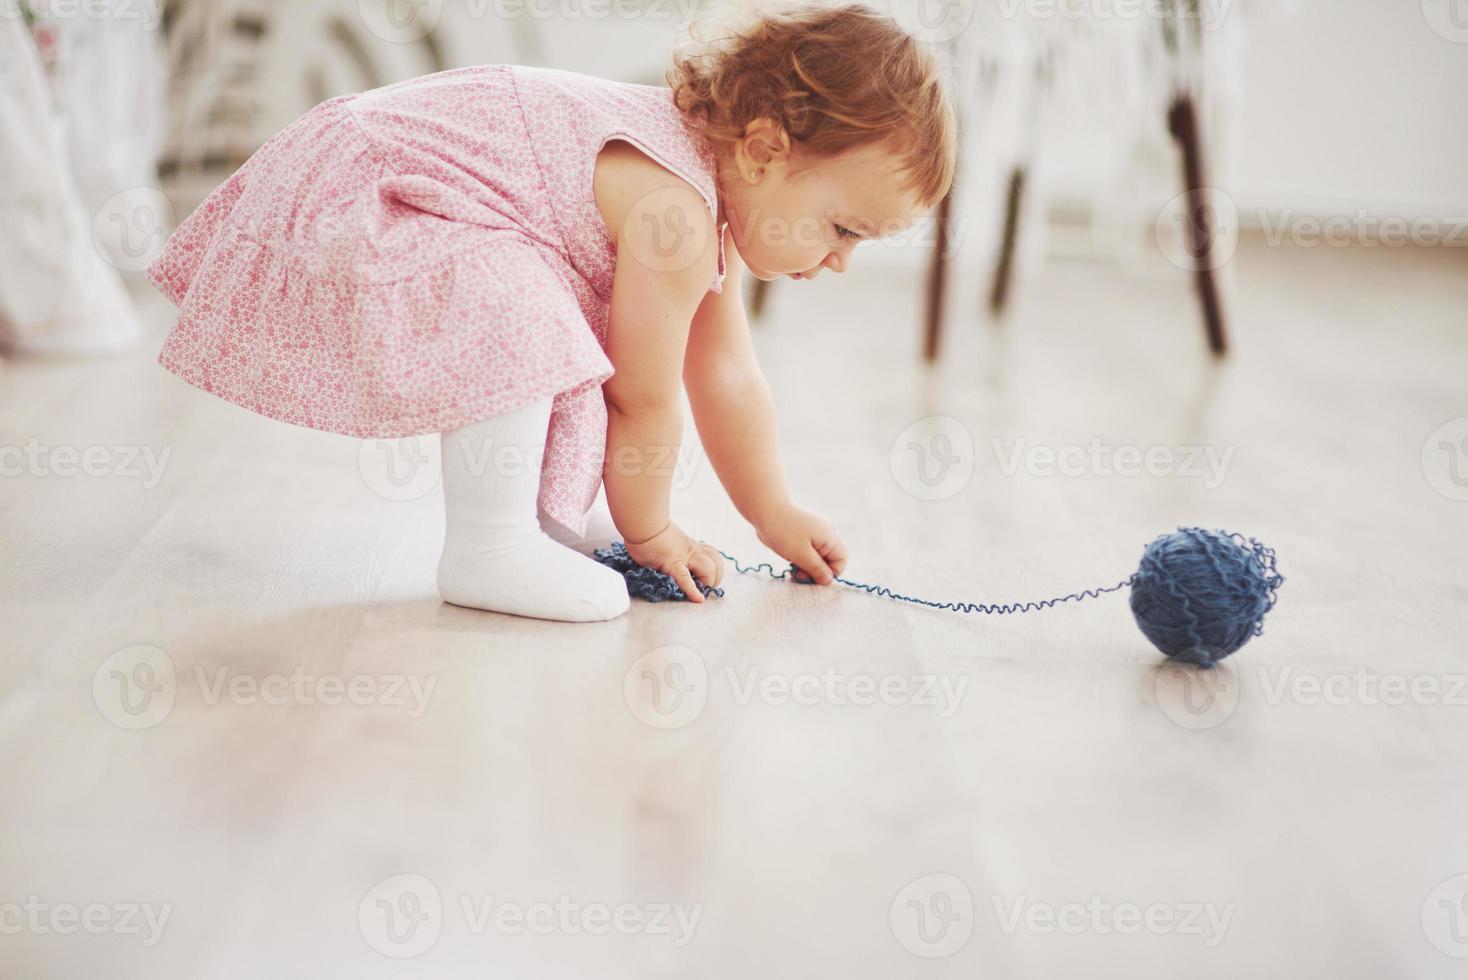 kindertijd concept. babymeisje in schattig jurkje spelen met gekleurde draad. witte vintage kinderkamer foto